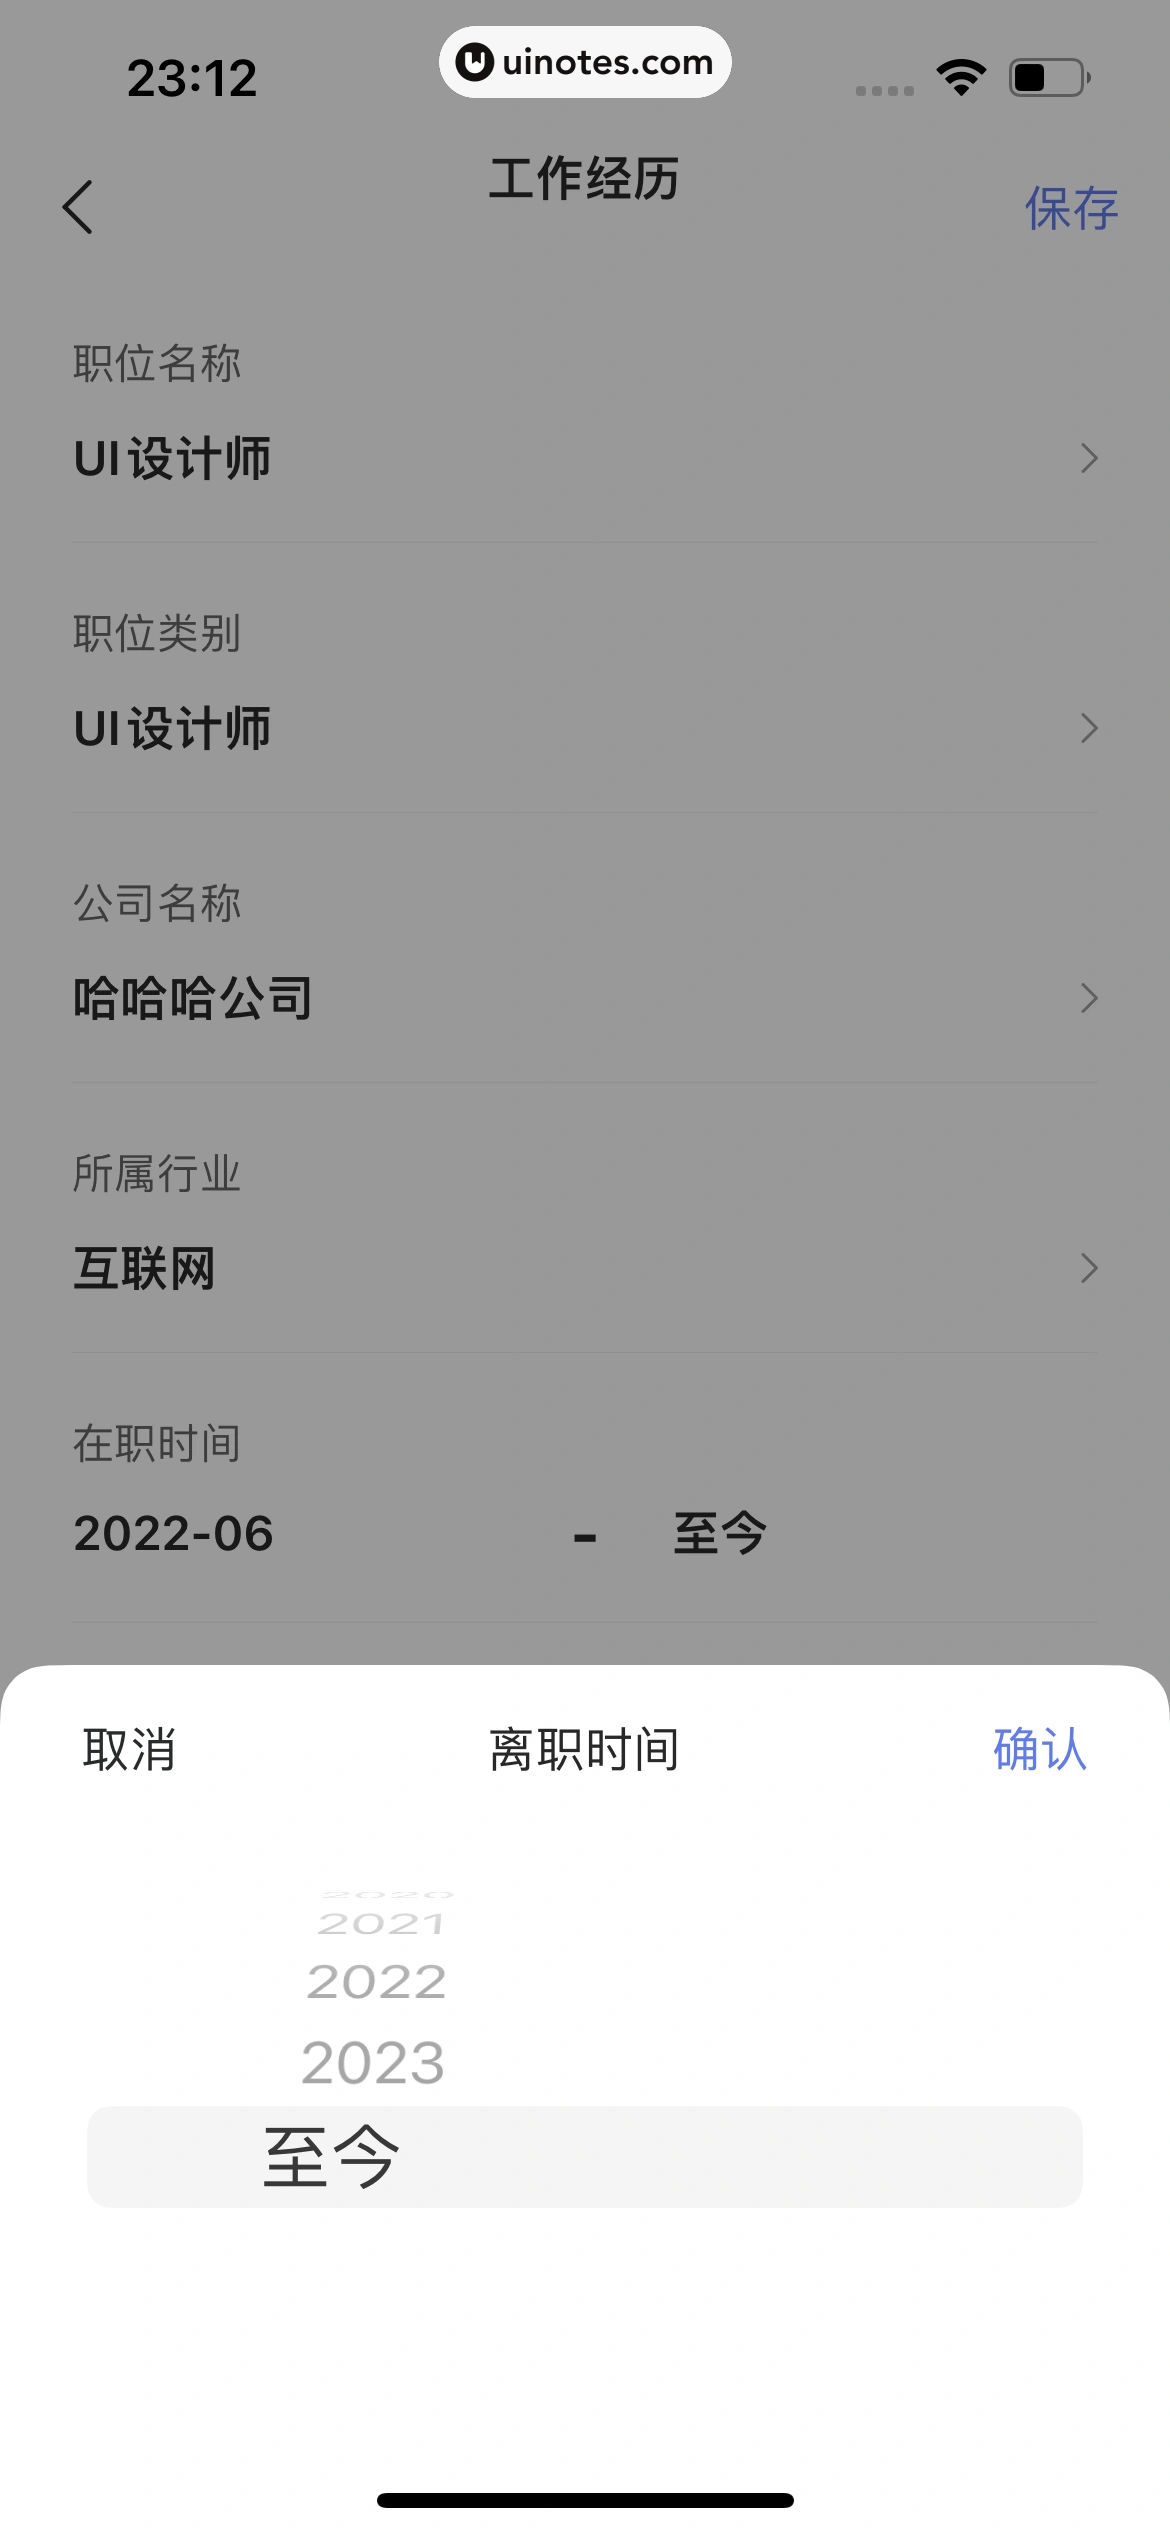 智联招聘 App 截图 508 - UI Notes